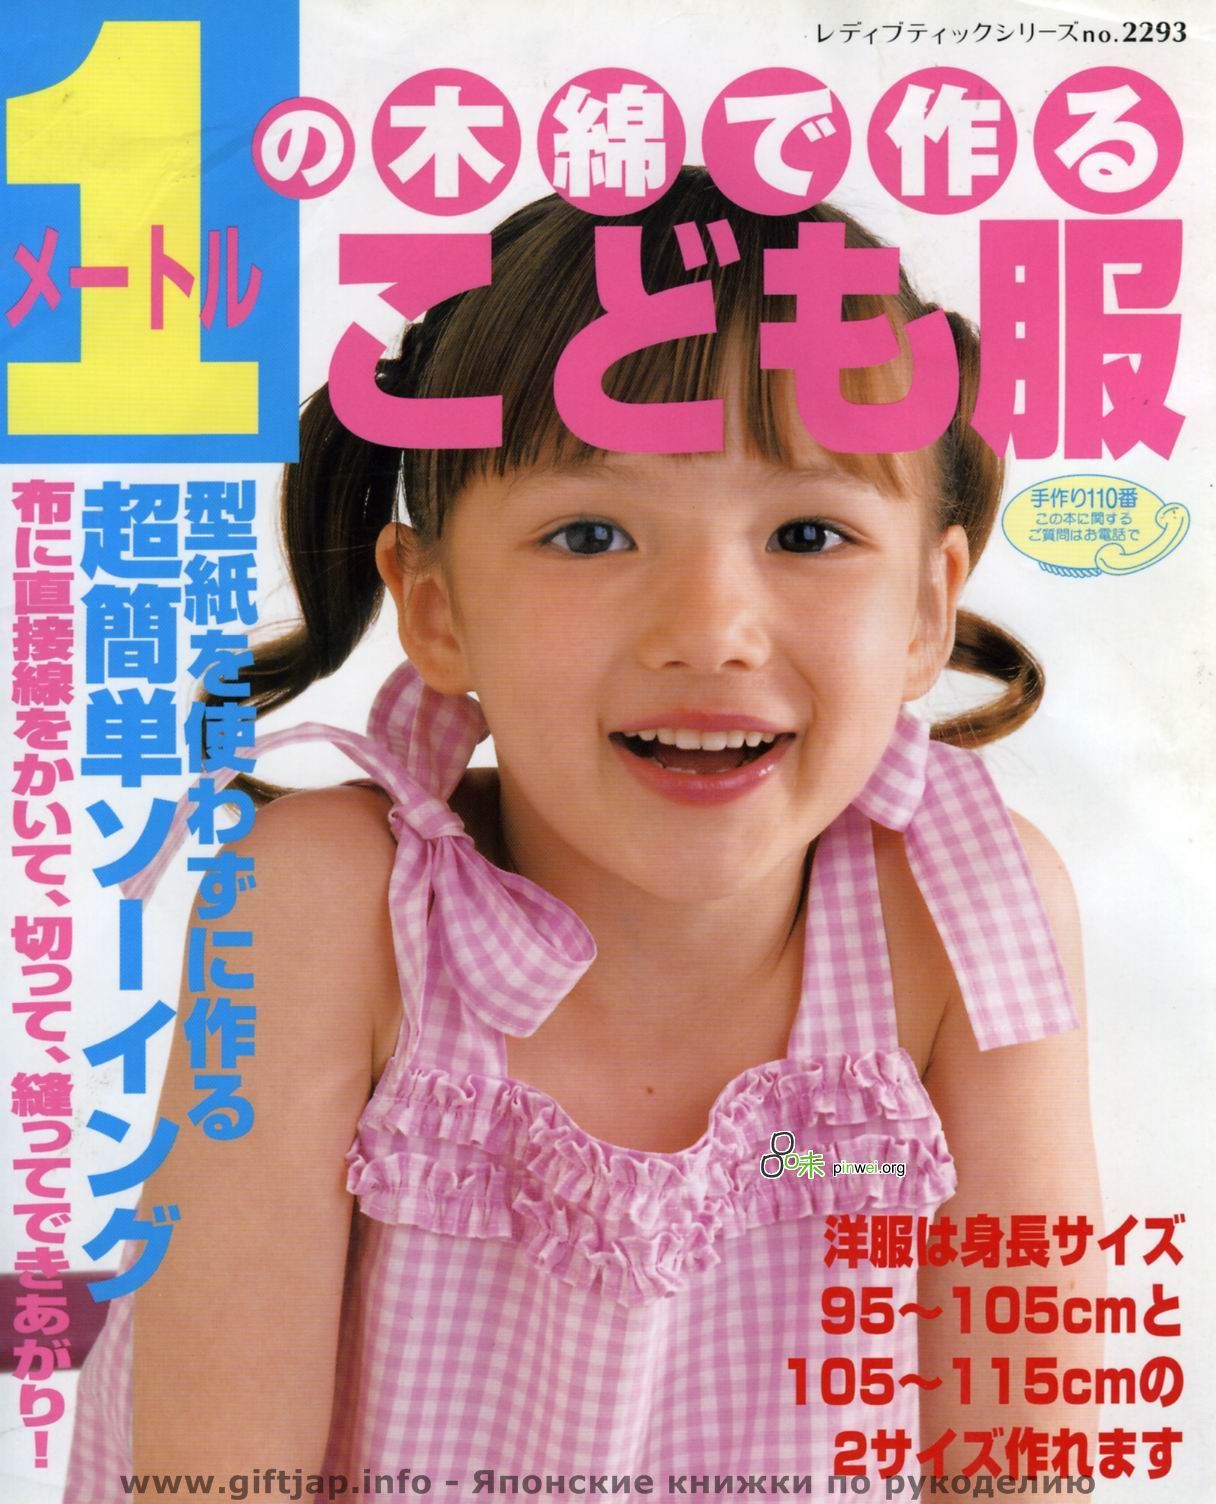 Порно японцев с детьми фото 108